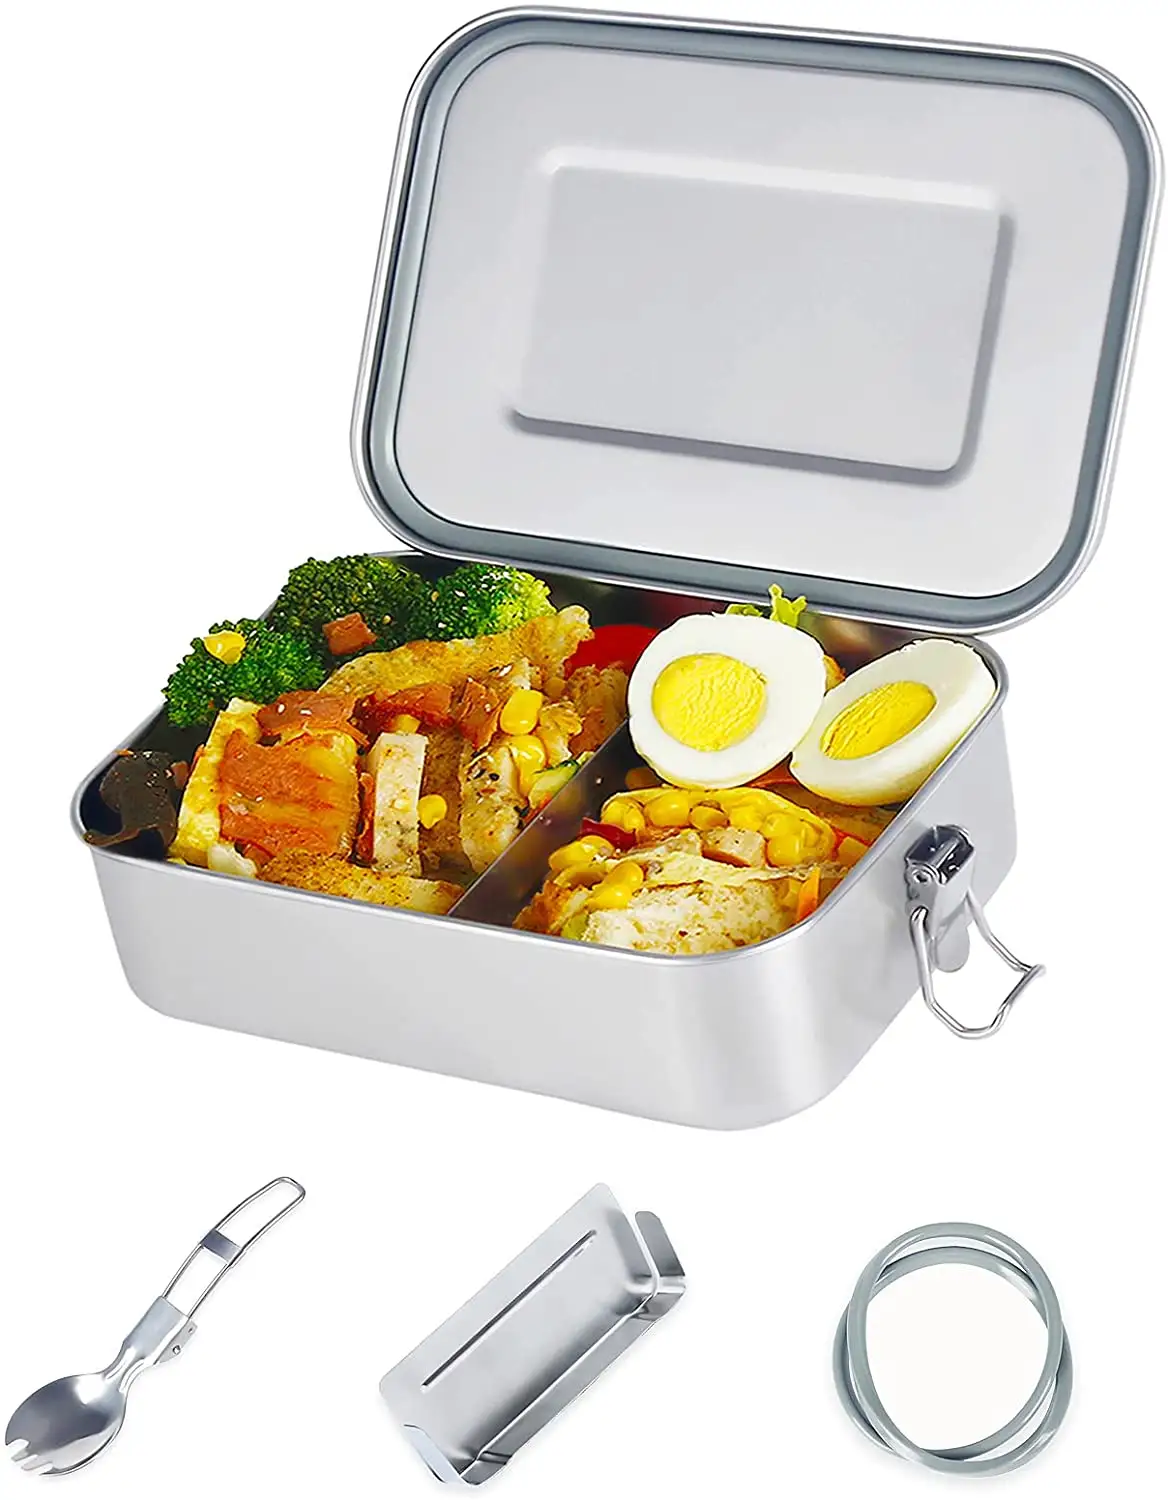 ステンレス製ランチボックスプラスチックフリーBPAフリー18/8ステンレス製食品収納ボックス仕切り付き漏れのない食品容器